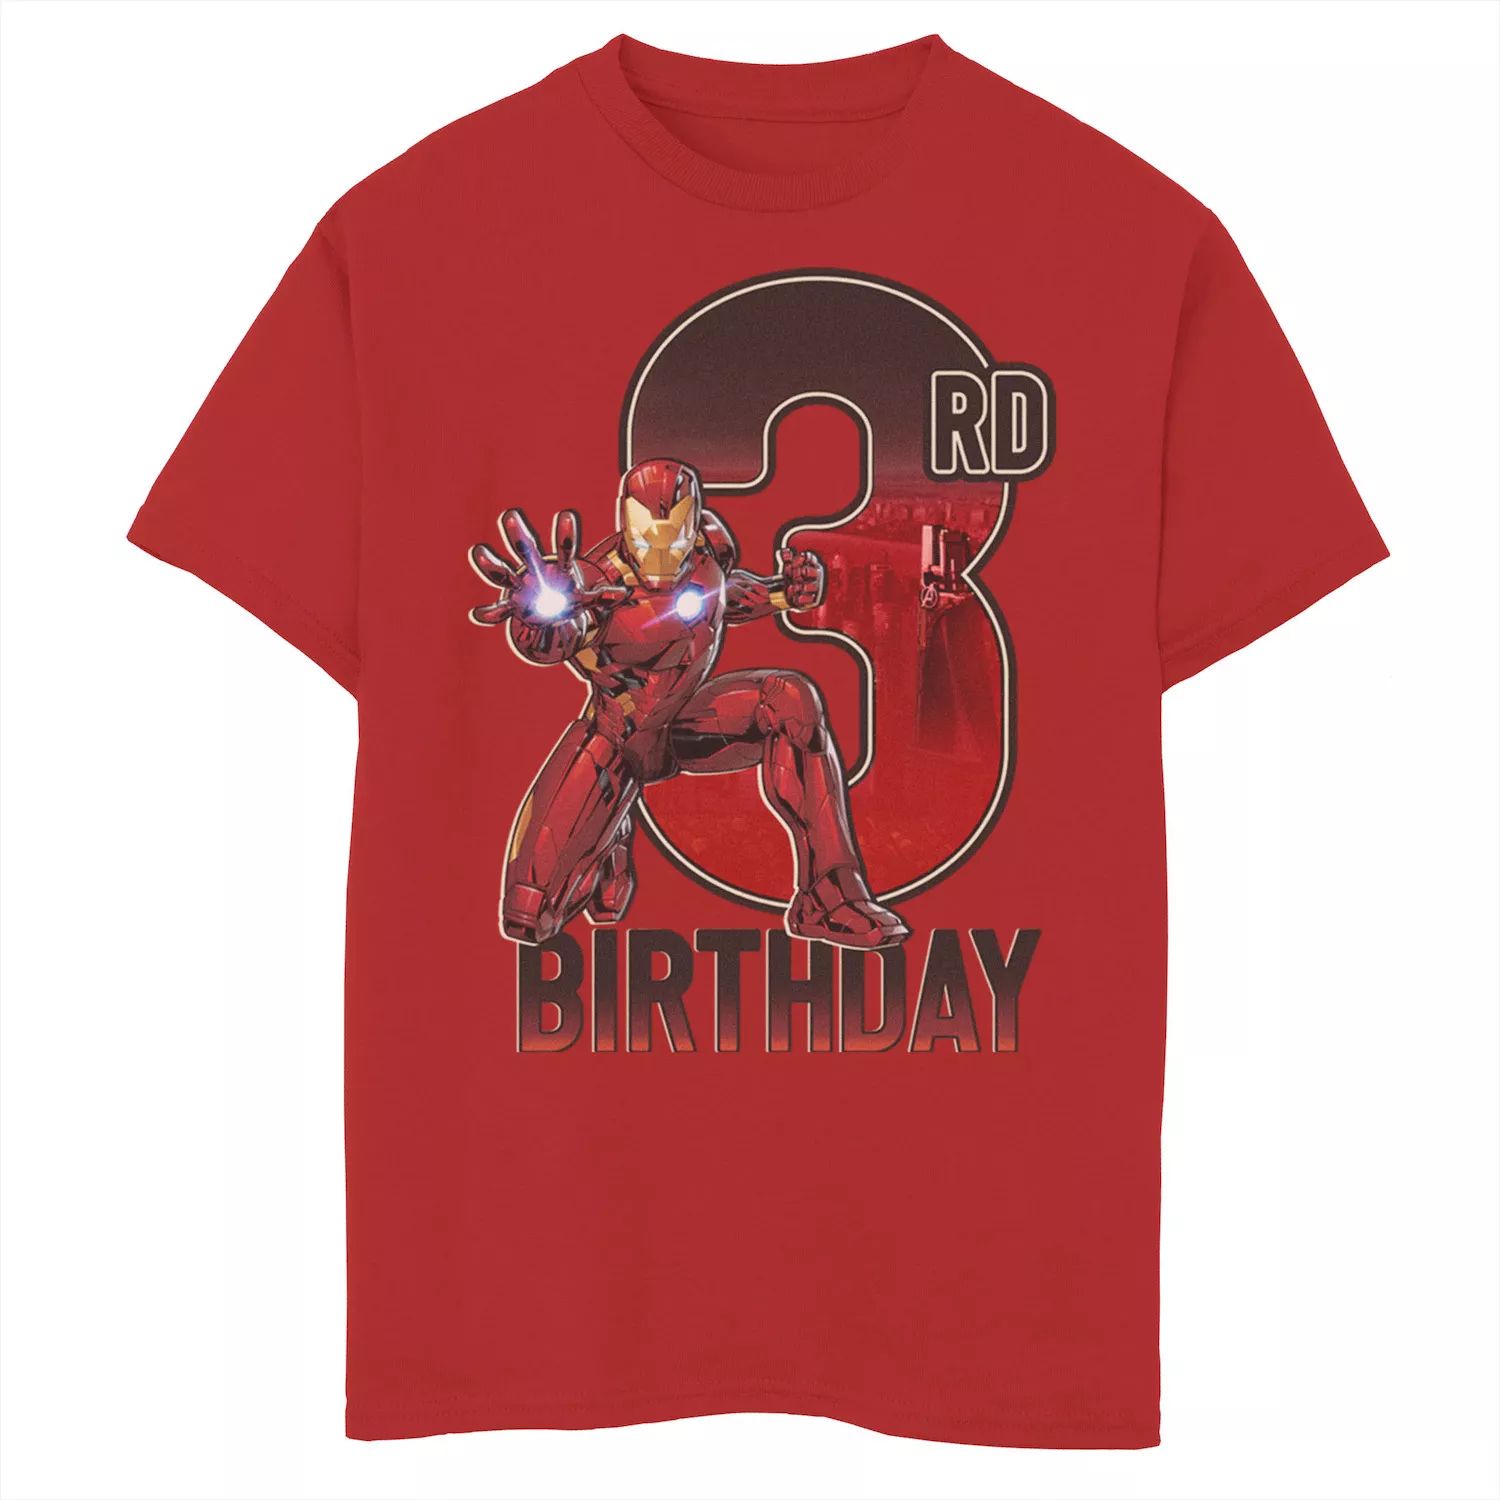 Футболка с графическим изображением на день рождения «Железный человек Marvel» для мальчиков 8–20 лет на 3-й день рождения Marvel футболка с изображением рожденного февраля 1950 года ограниченный выпуск подарки на 70 й день рождения футболка